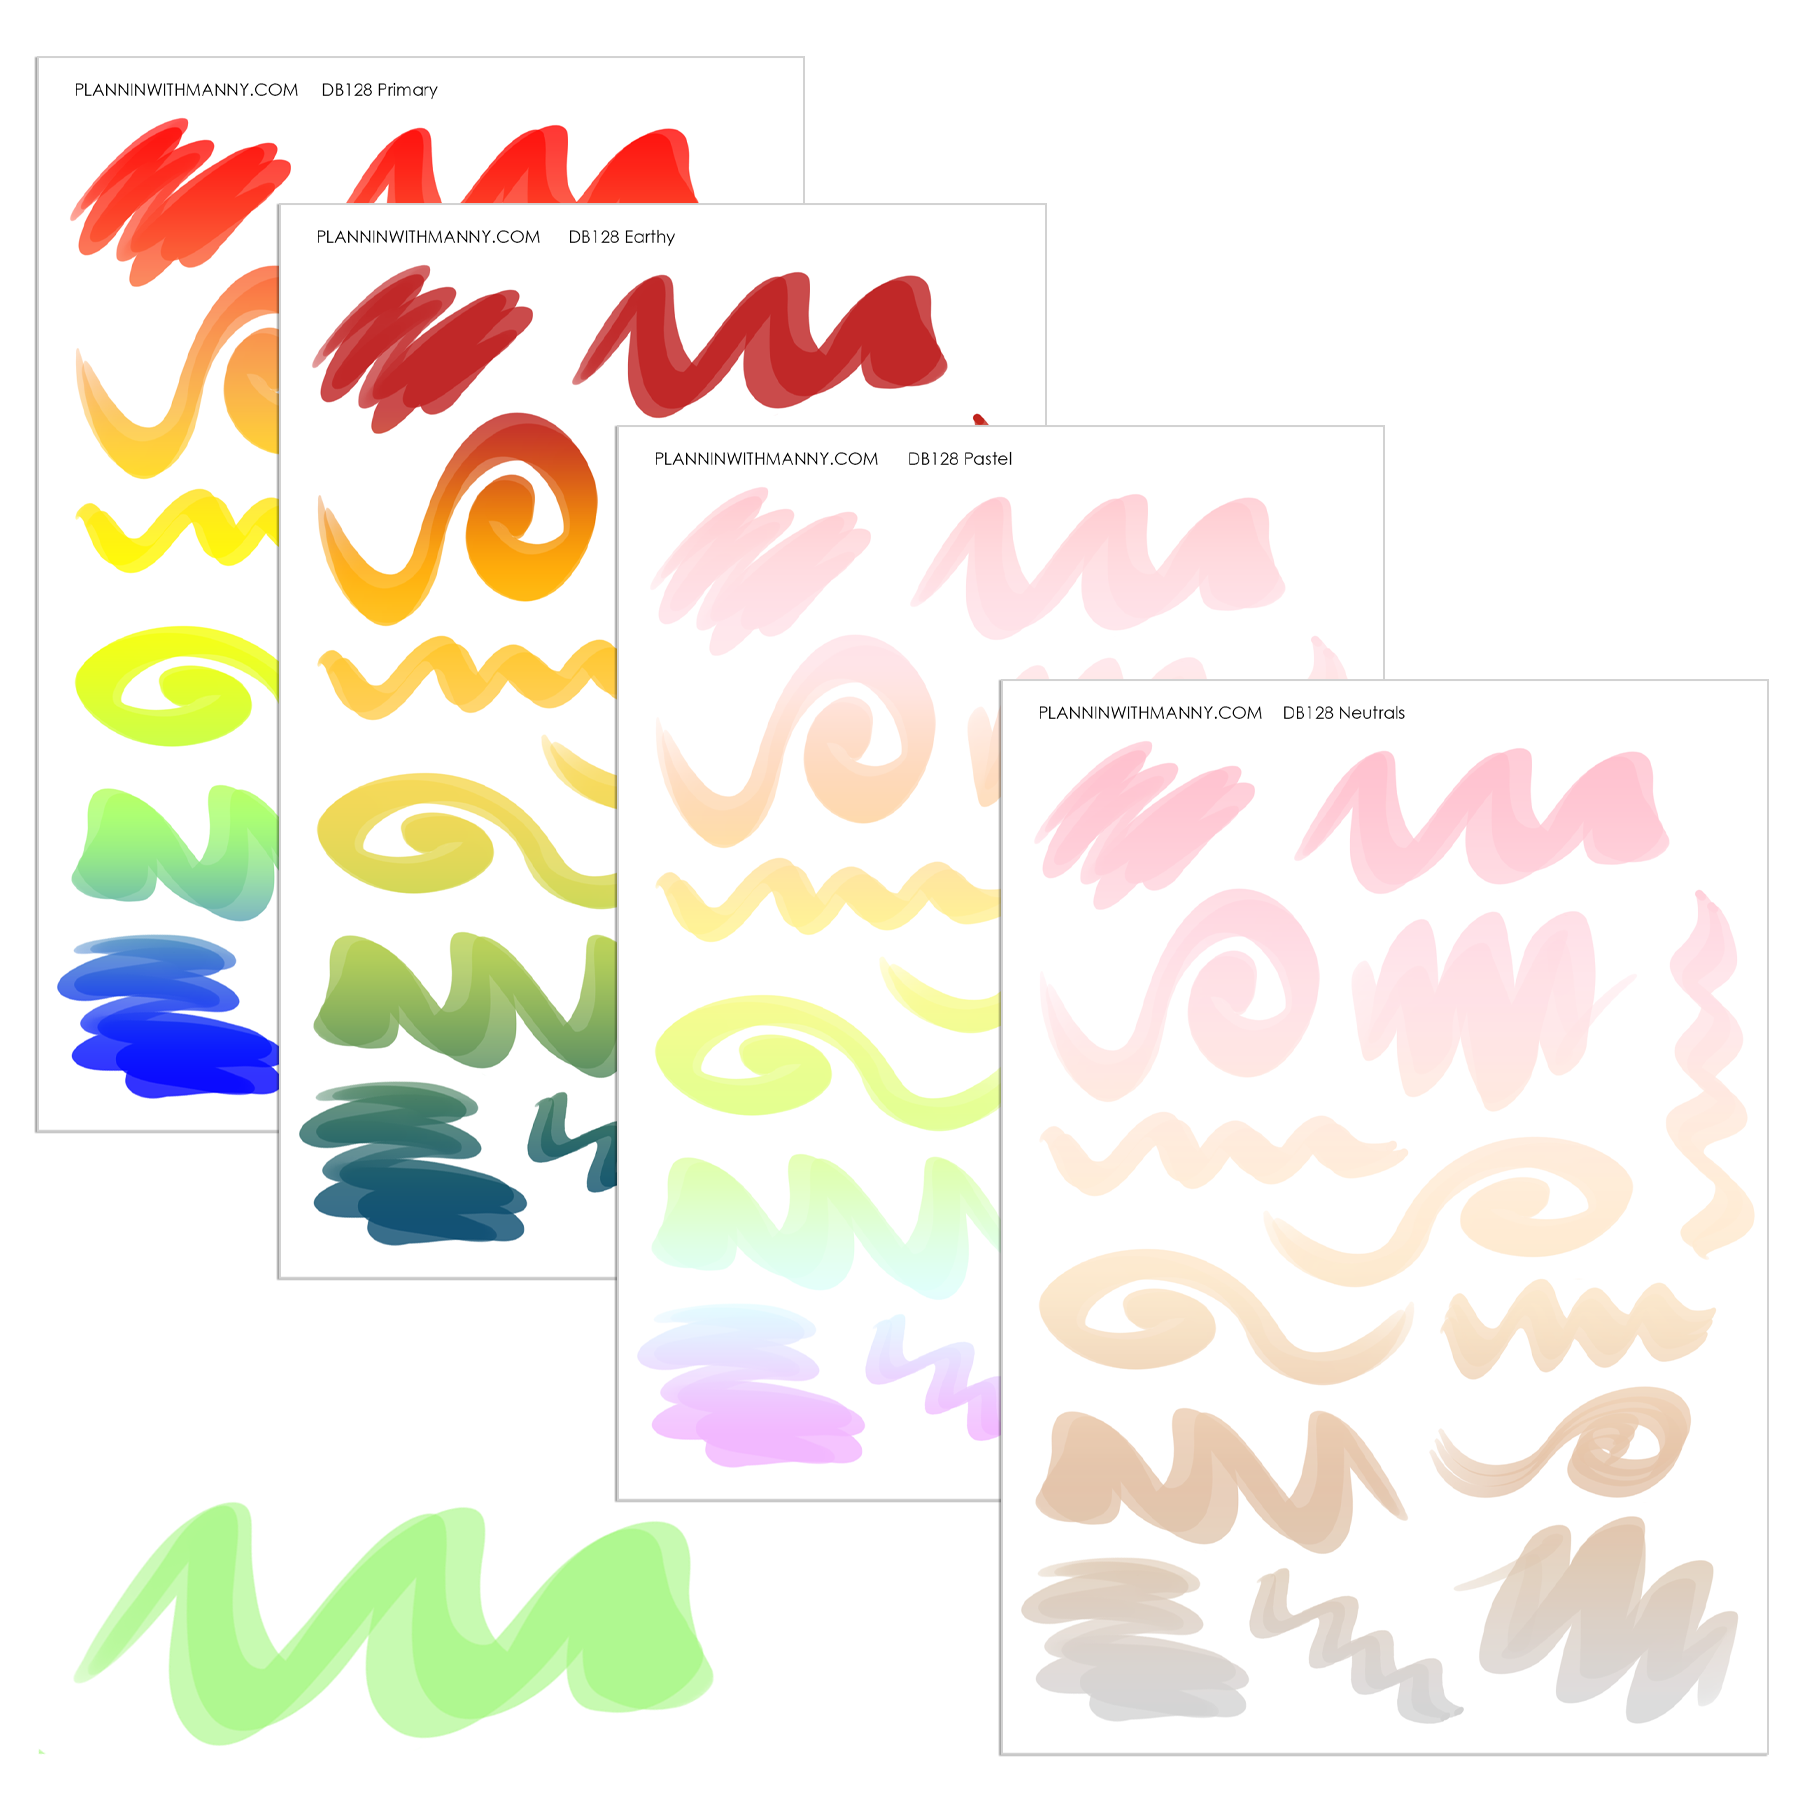 DB128 Swirly Swipes in Rainbow Gradients Stickers